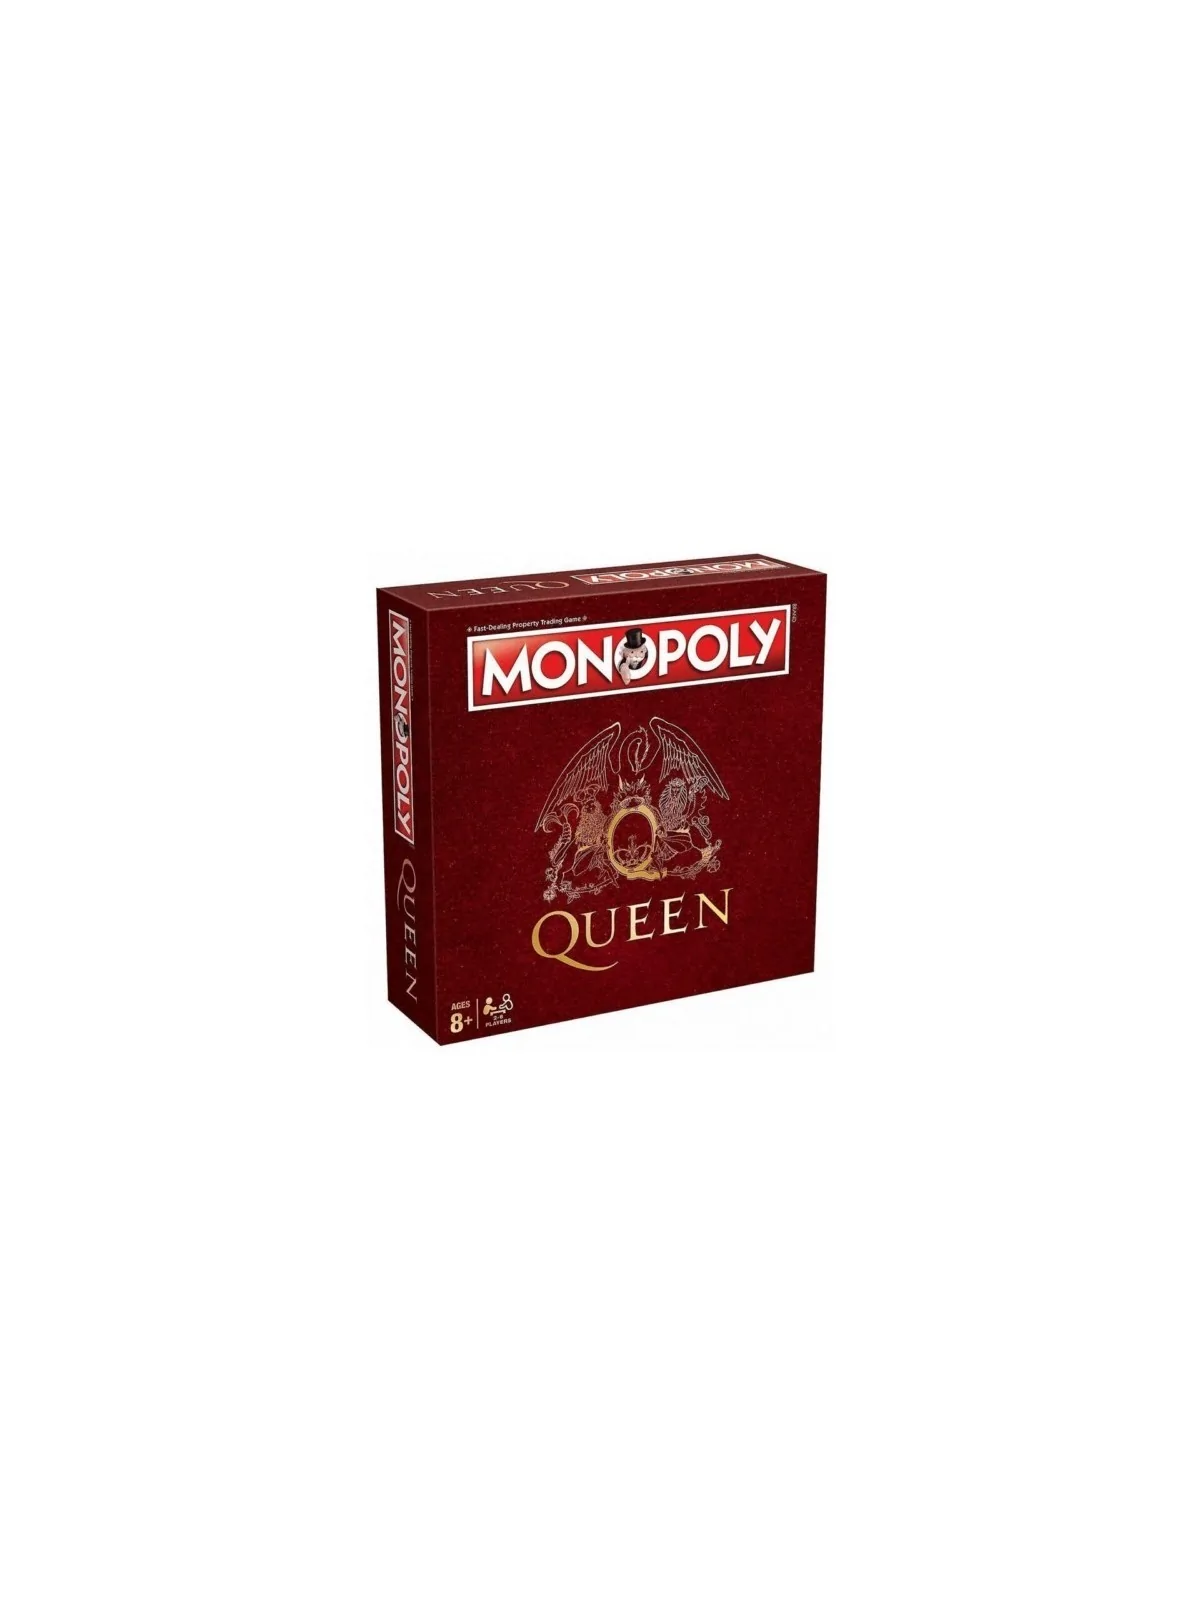 Comprar Monopoly: Queen barato al mejor precio 35,96 € de Eleven Force